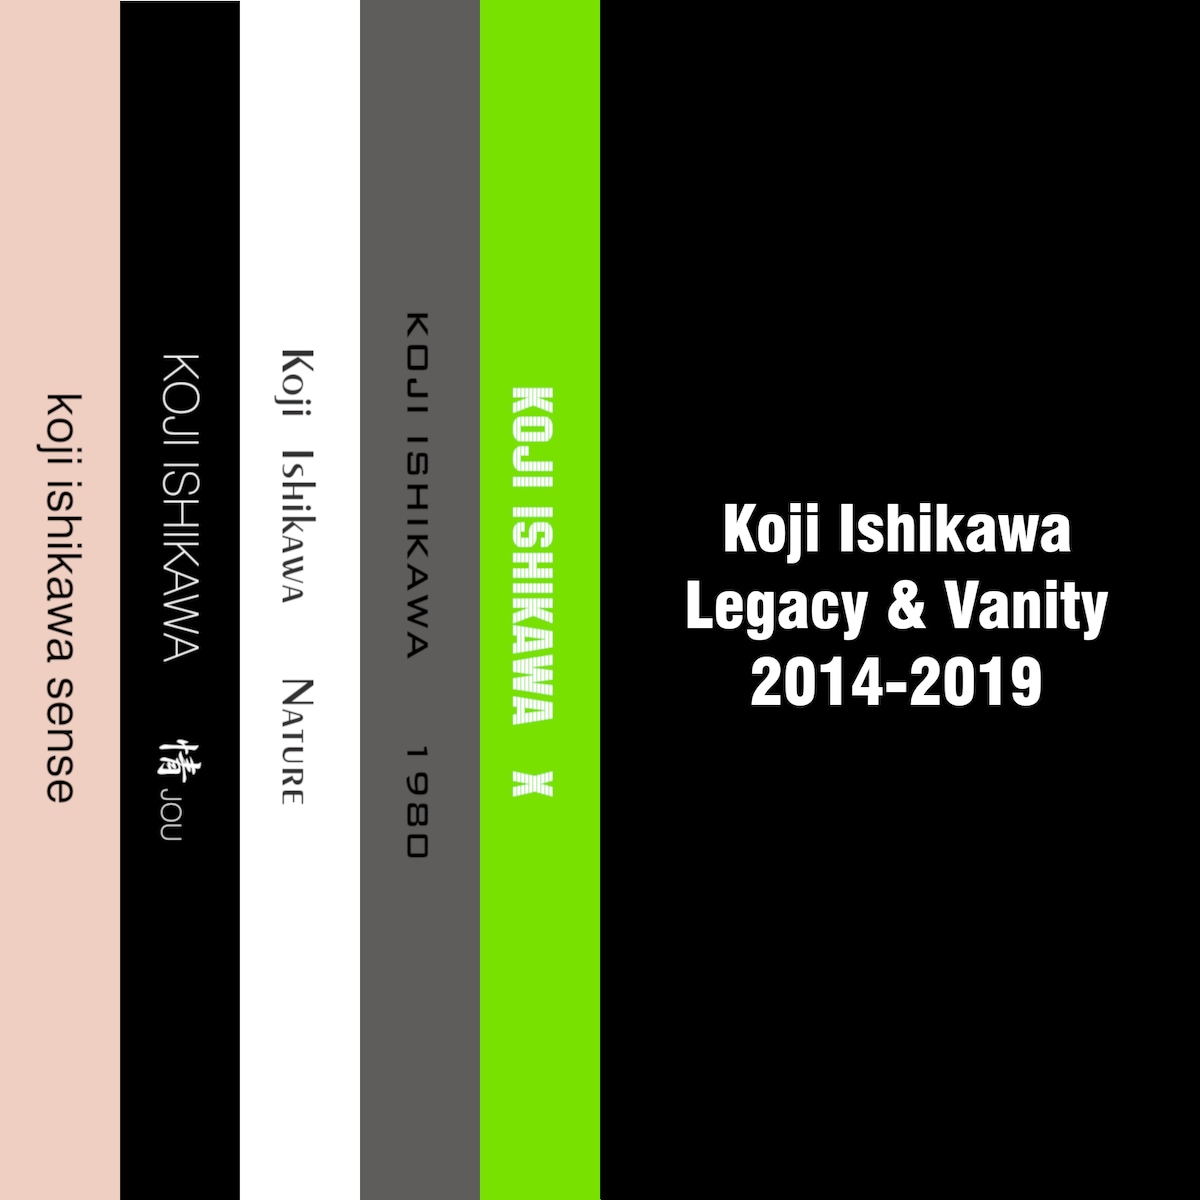 Legacy & Vanity 2014-2019